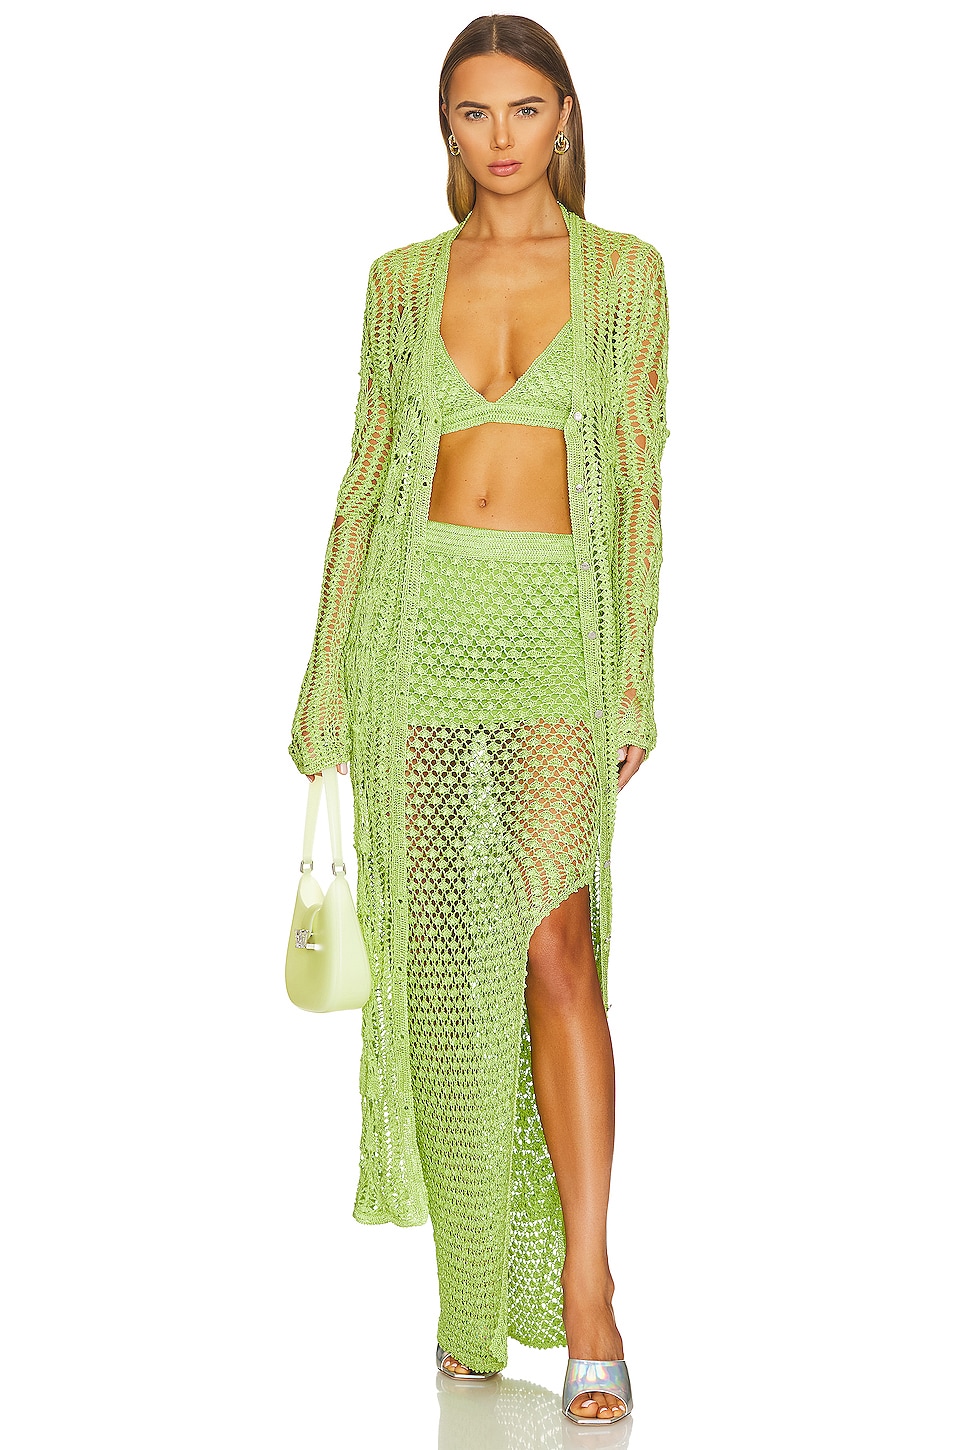 SER.O.YA Sandy Crochet Skirt in Lime